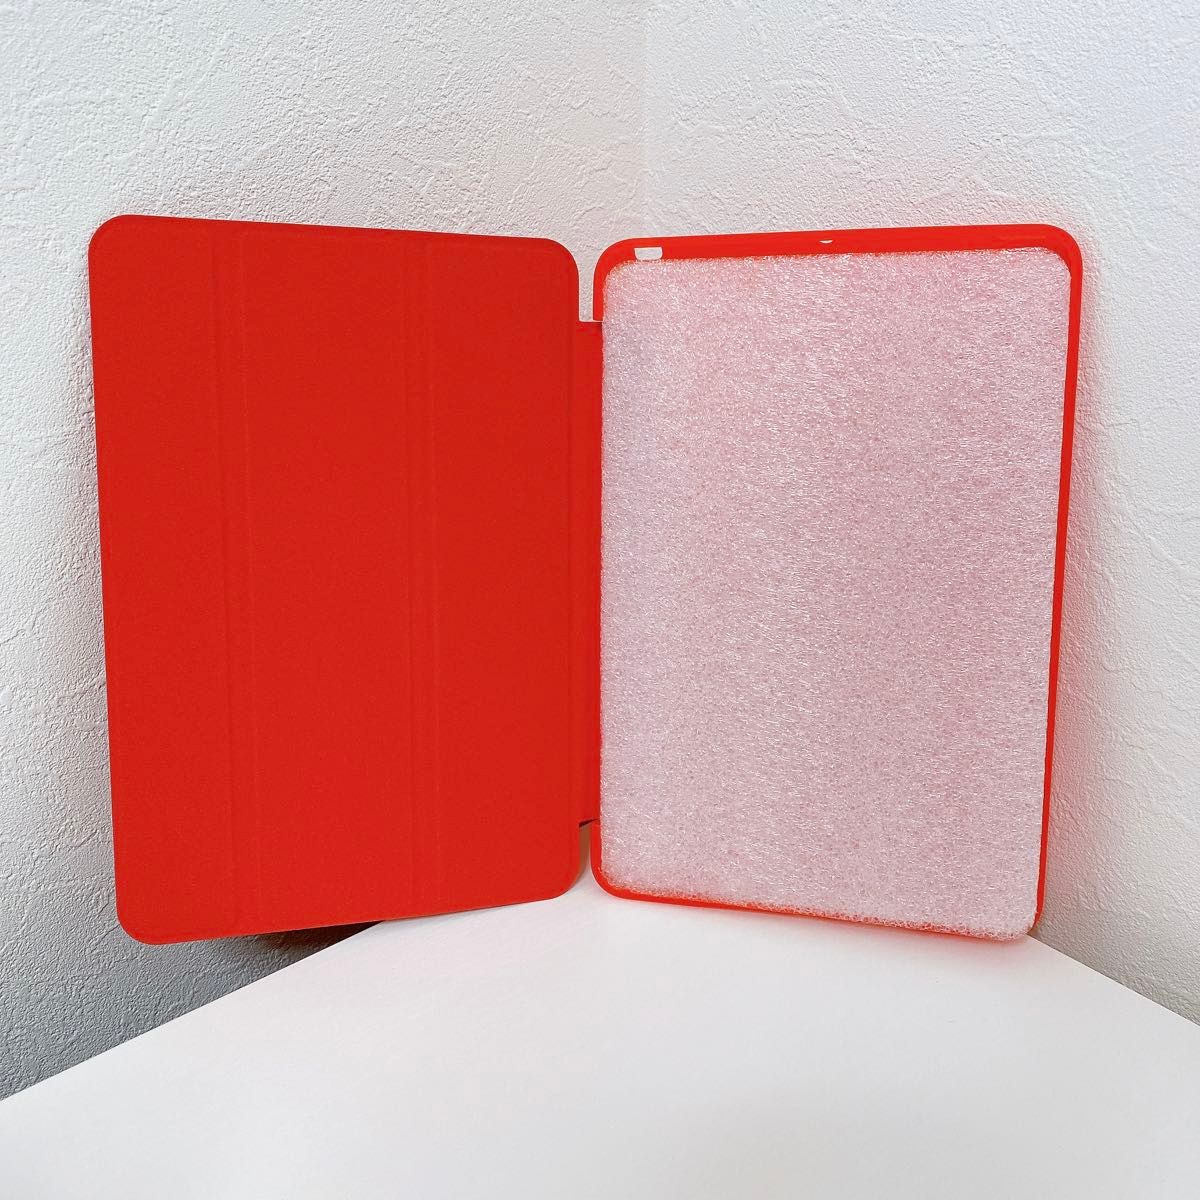 【新品未使用】iPad Mini 5 ケース 超軽量 カバー 三つ折りスタンド 赤 レッド